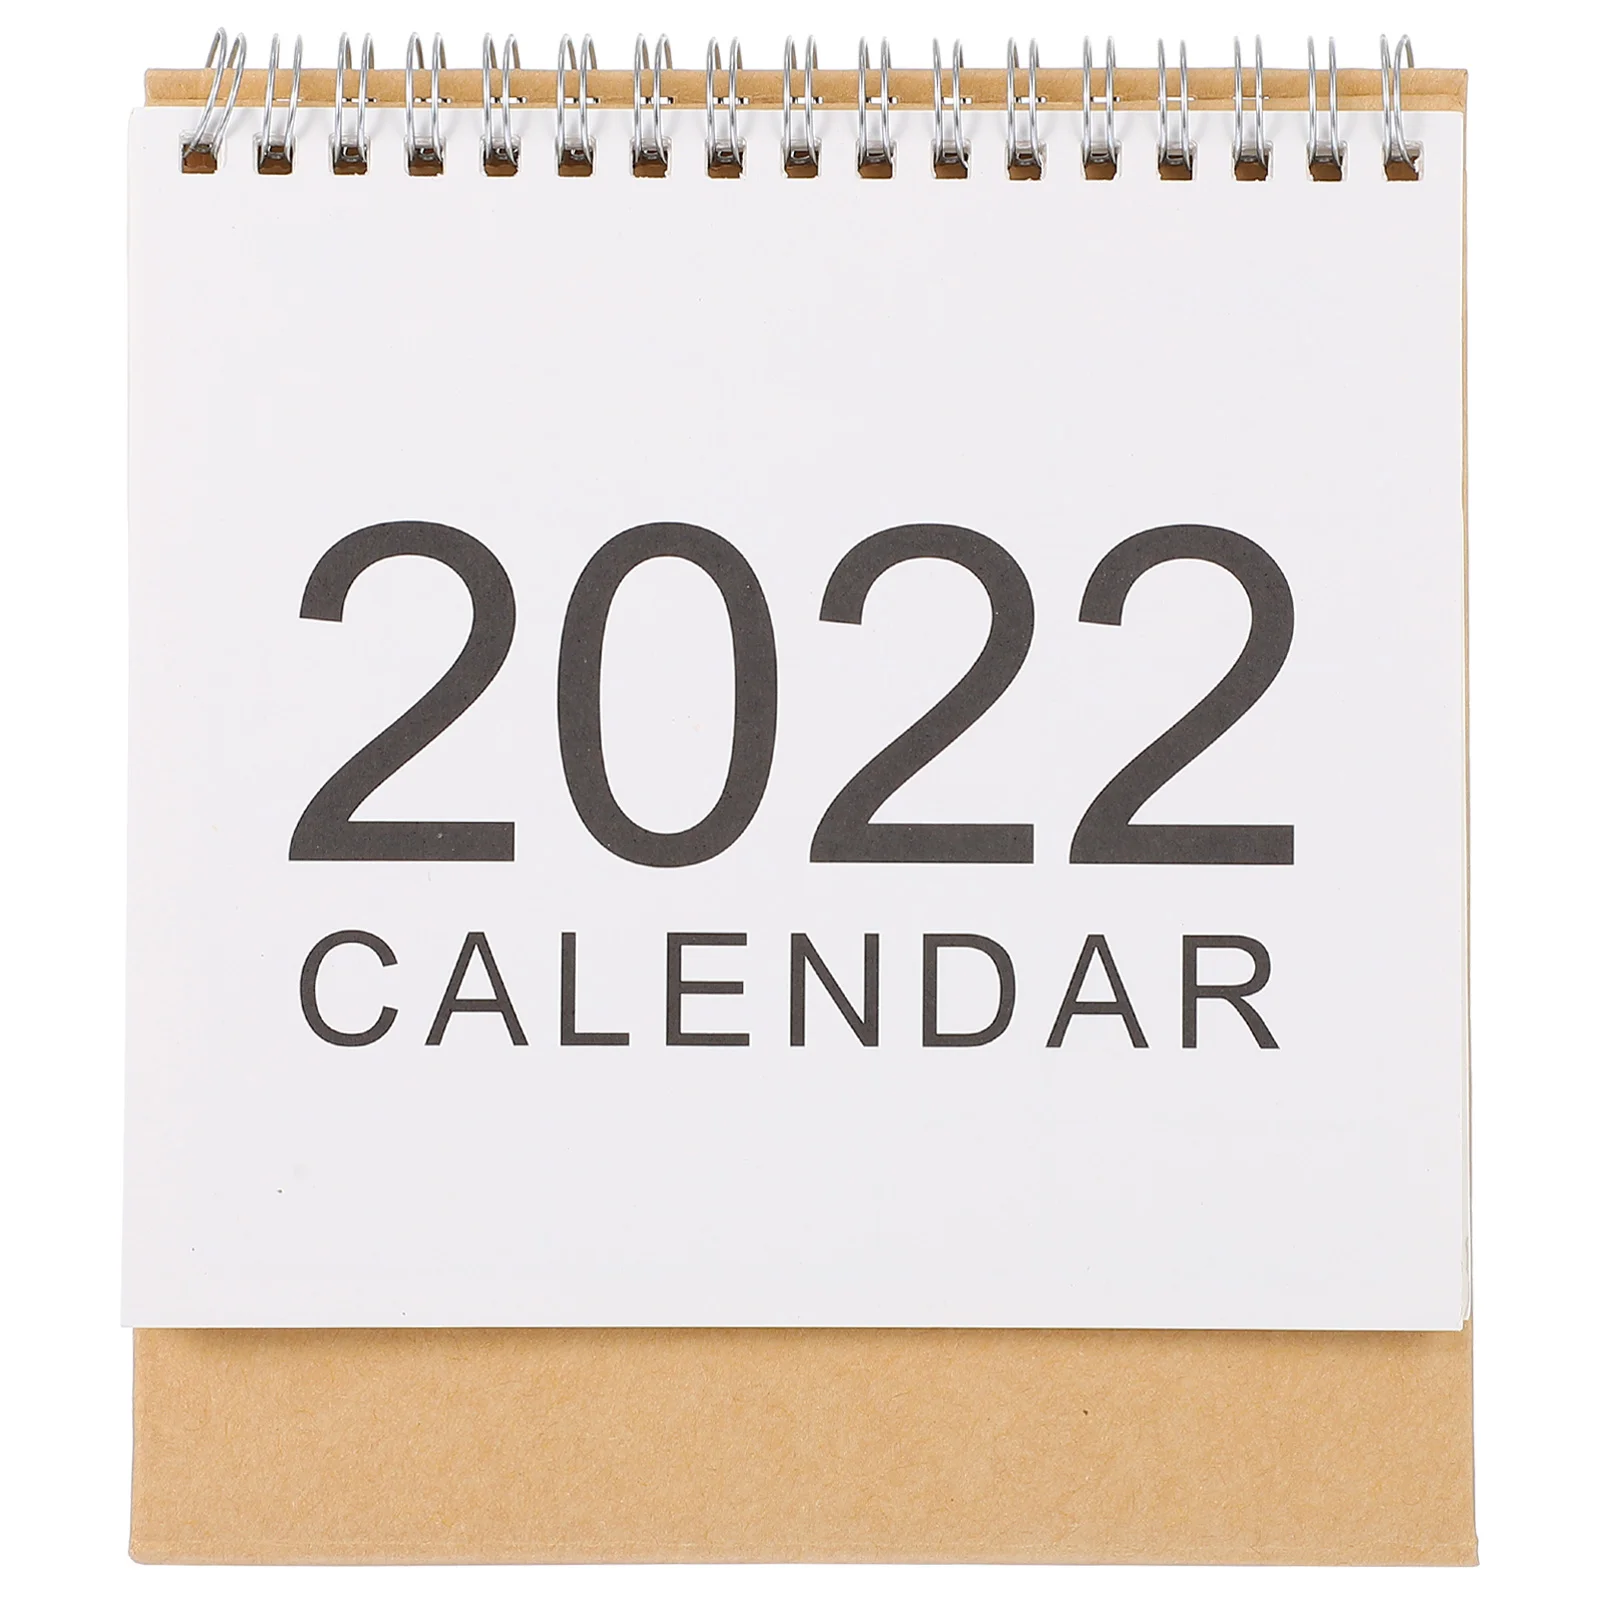 Настольный календарь, настольный календарь, новый планировщик, цитата, настольный учебный календарь 2022, календарь, календари, записная книжка, ежедневный график, бумажный стиль